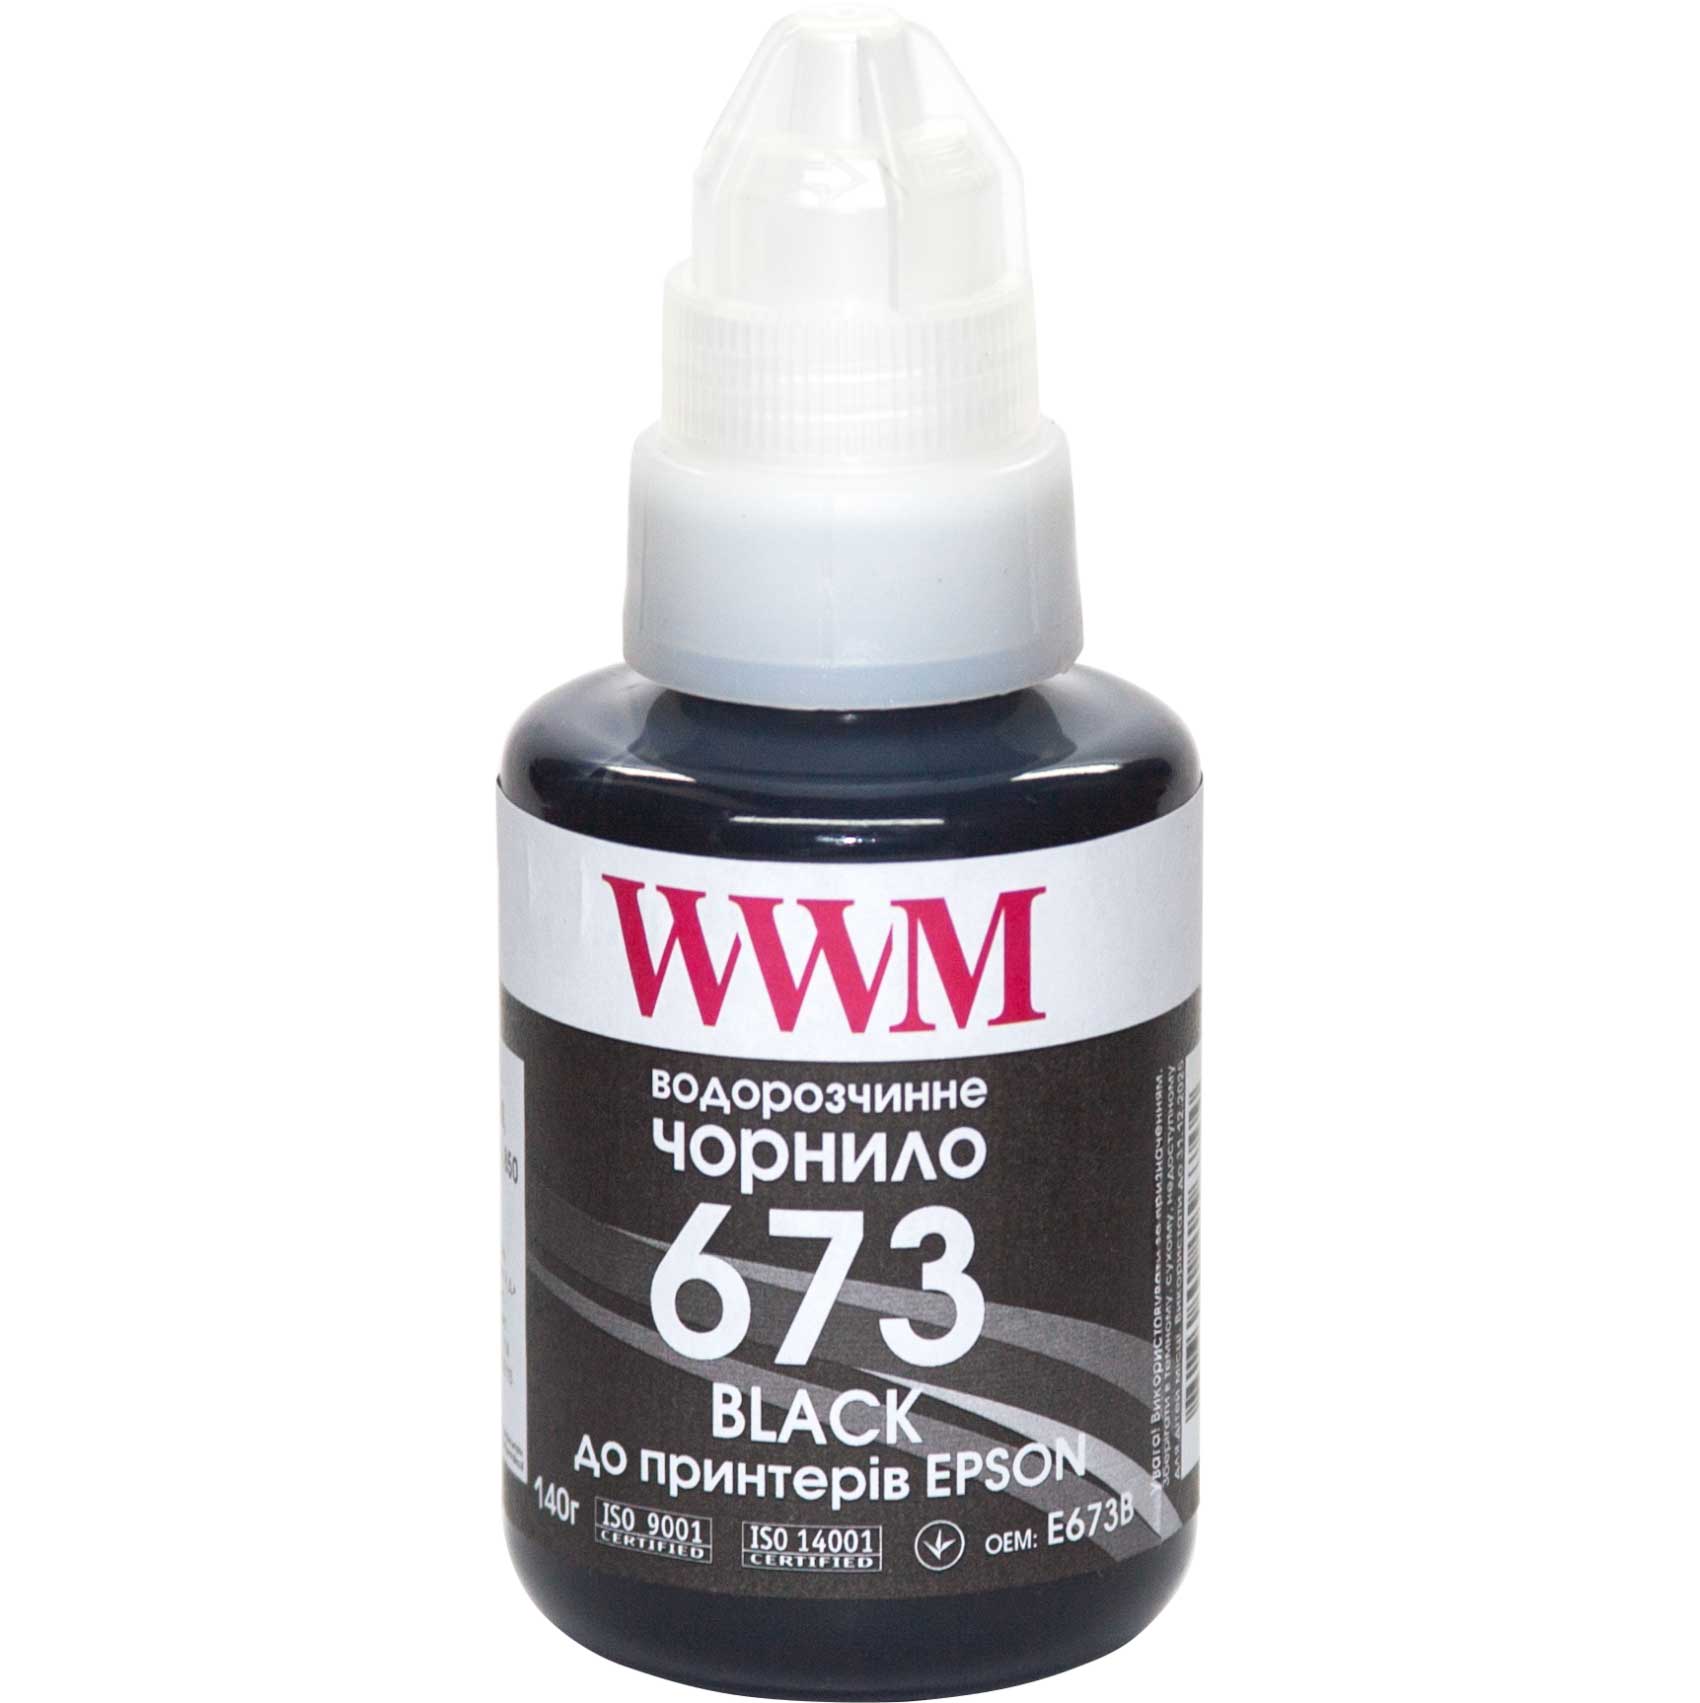 Чорнило WWM 673 для Epson L800/L805/L810/L850/ L1800 (Black) 140ml | Купити в інтернет магазині